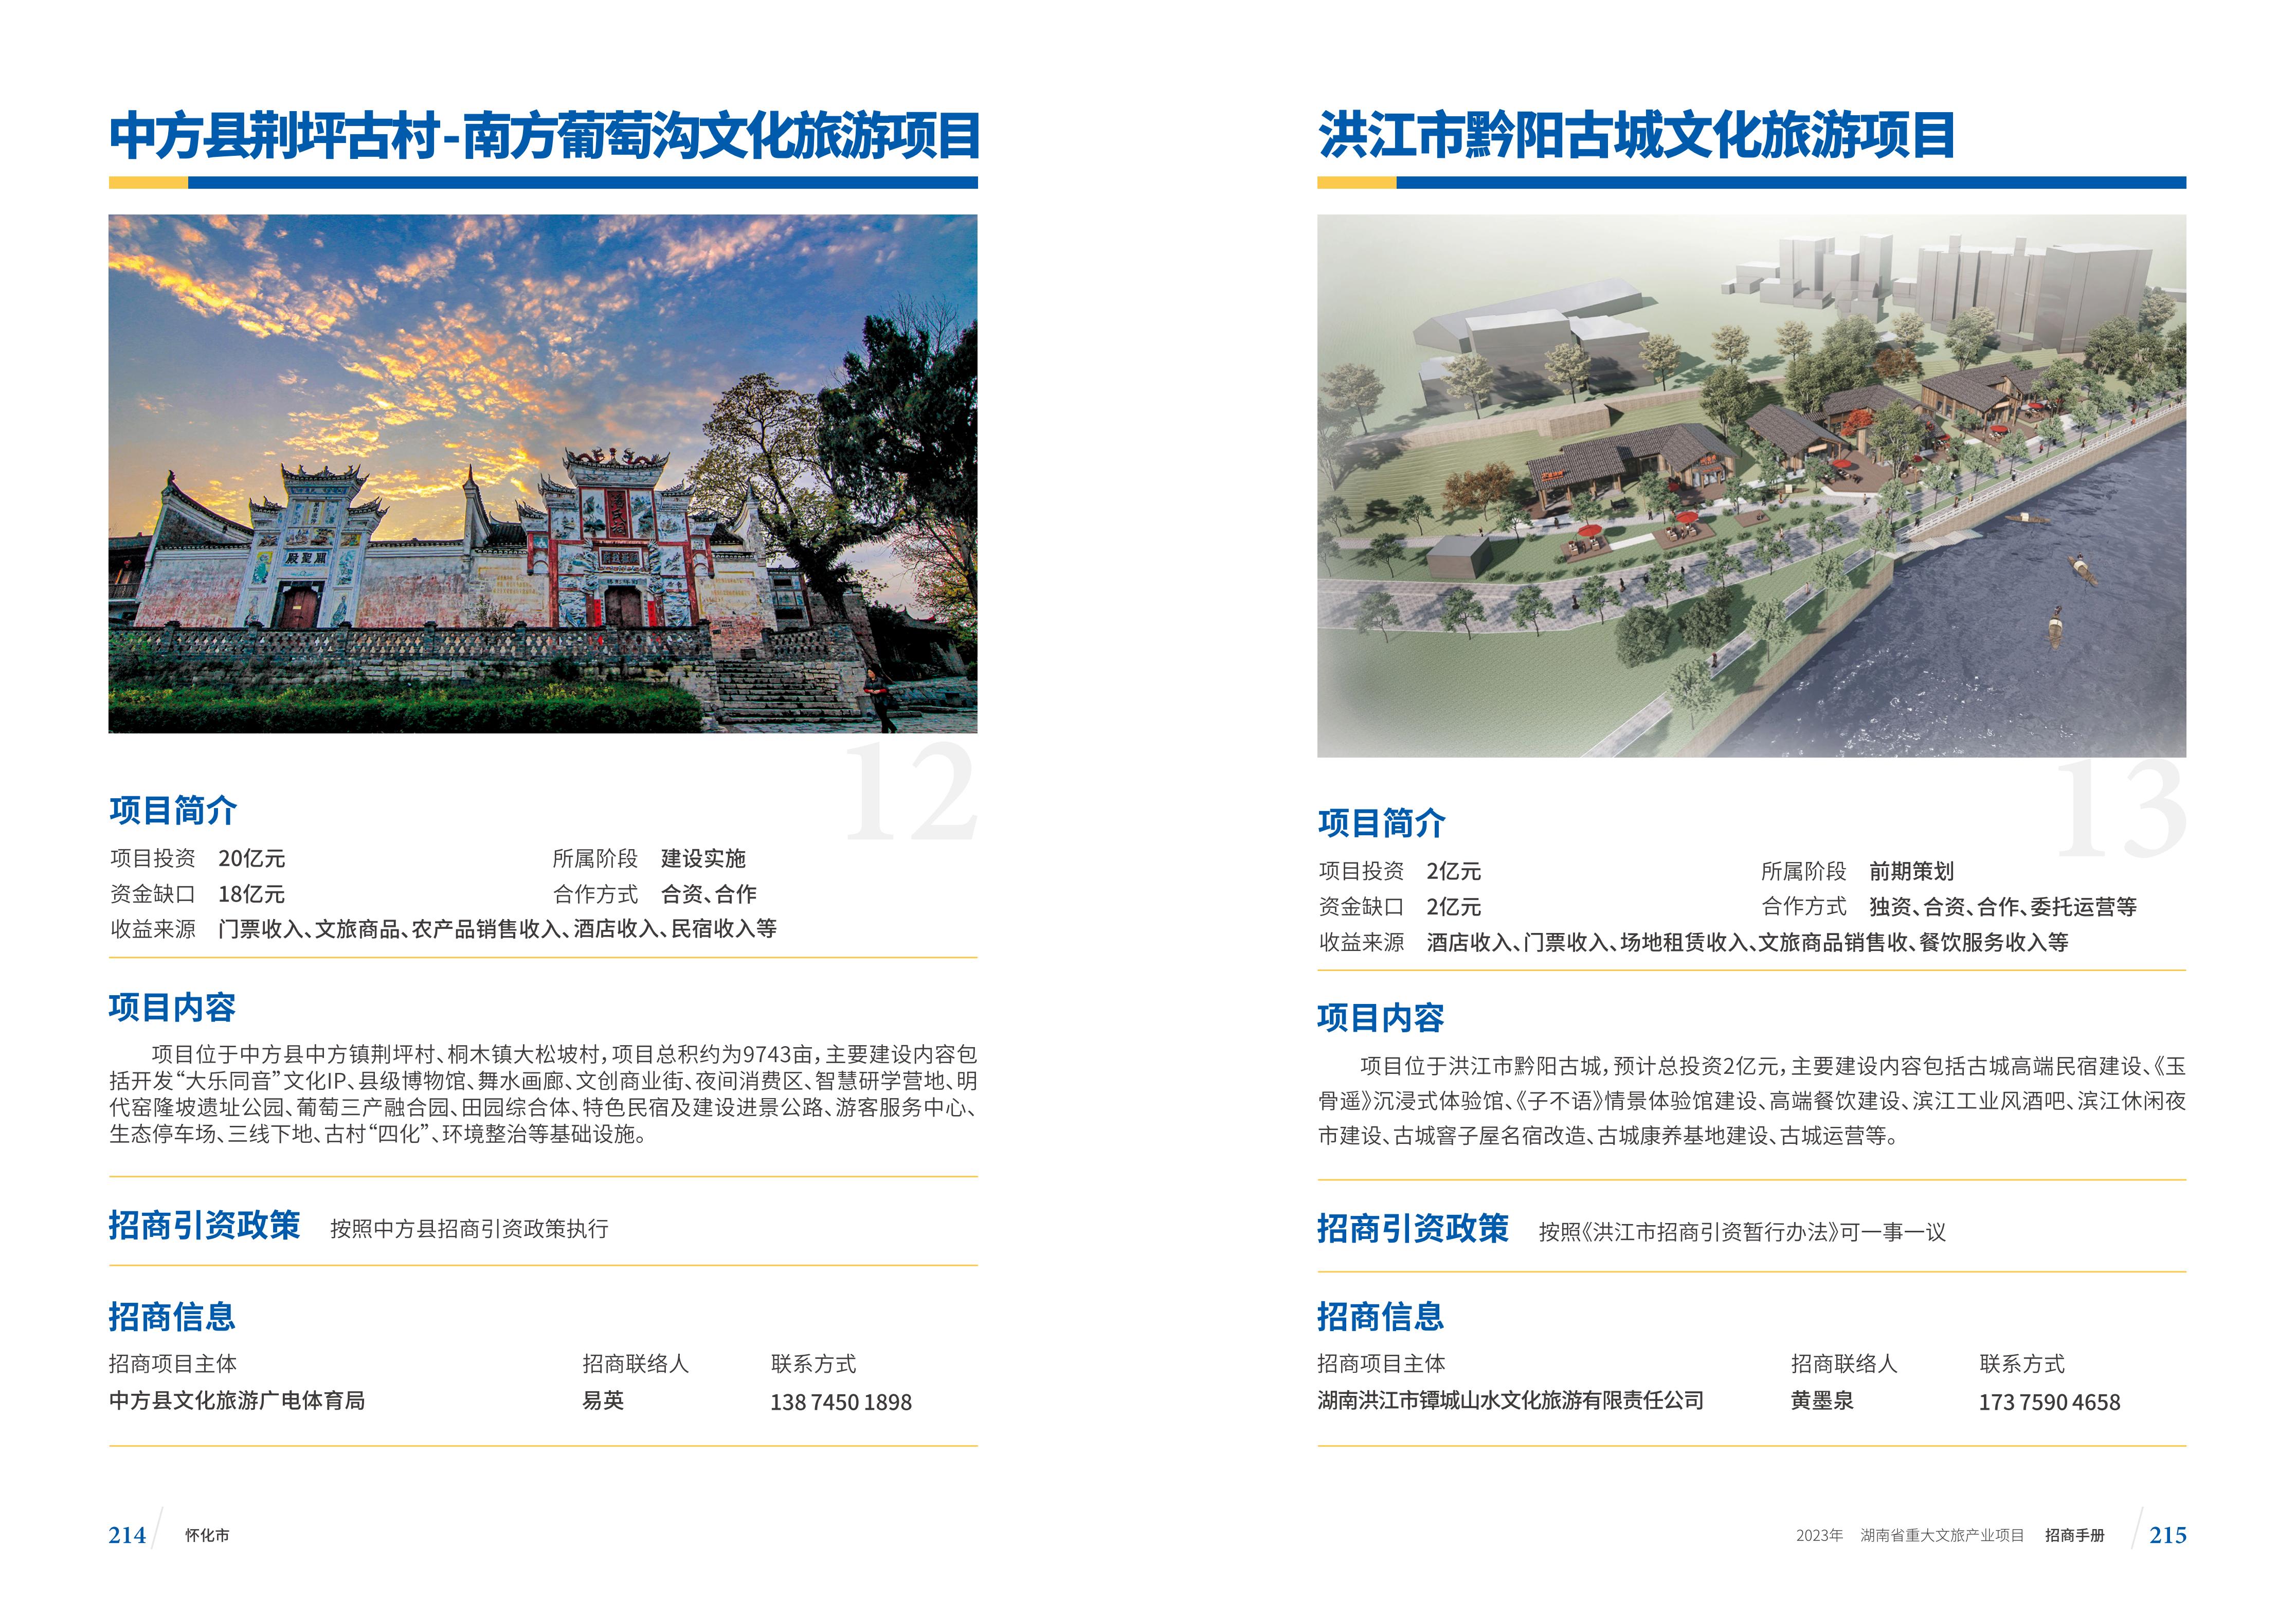 湖南省重大文旅产业项目招手册线上链接版_115.jpg